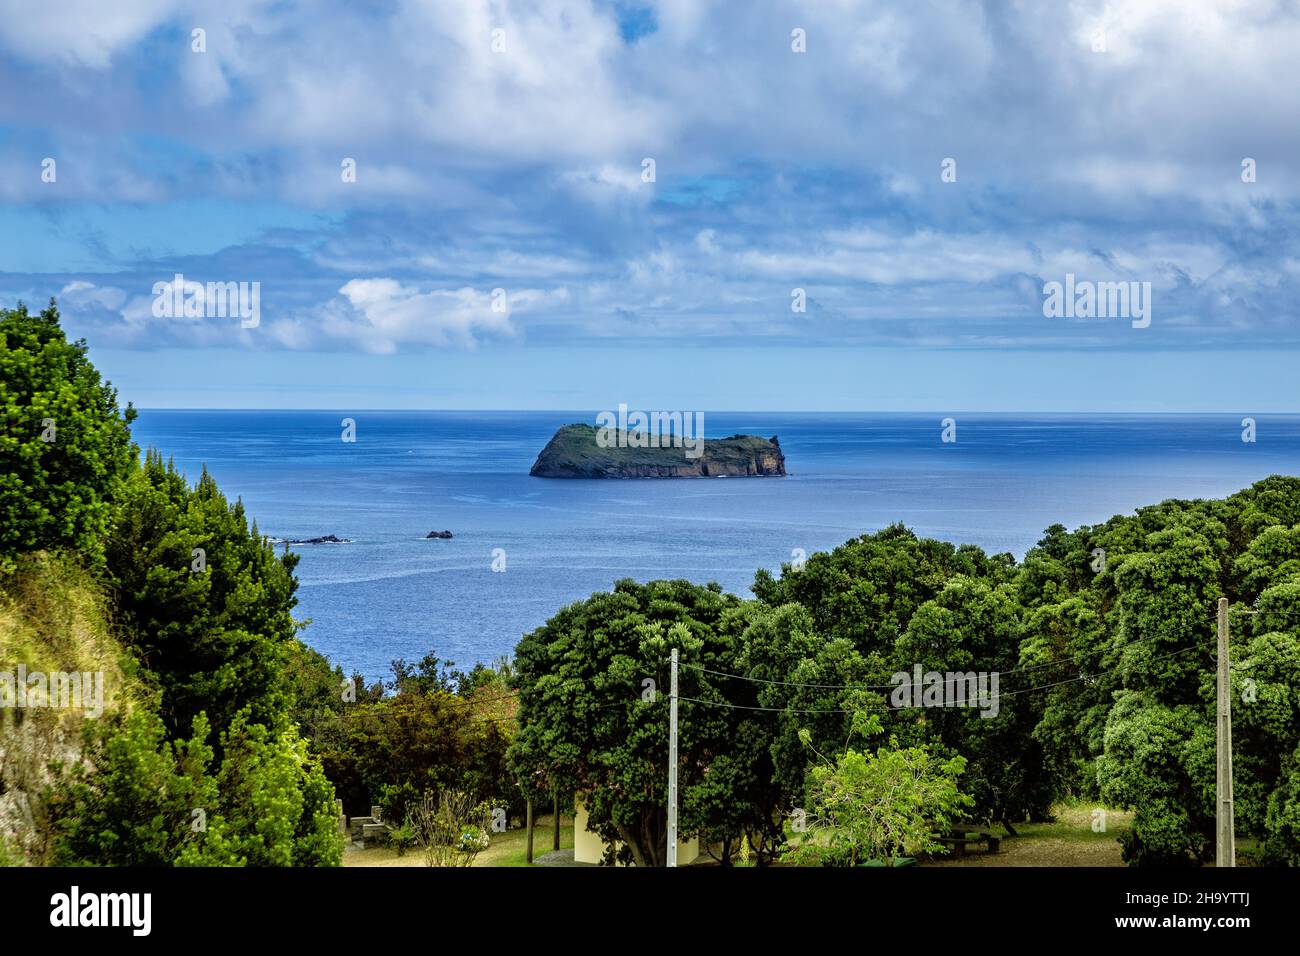 Island Ilhéu de Vila Franca, São Miguel Island, Azores, Açores, Portugal, Europe.   Island in front of the town of Vila Franca do Campo. Stock Photo